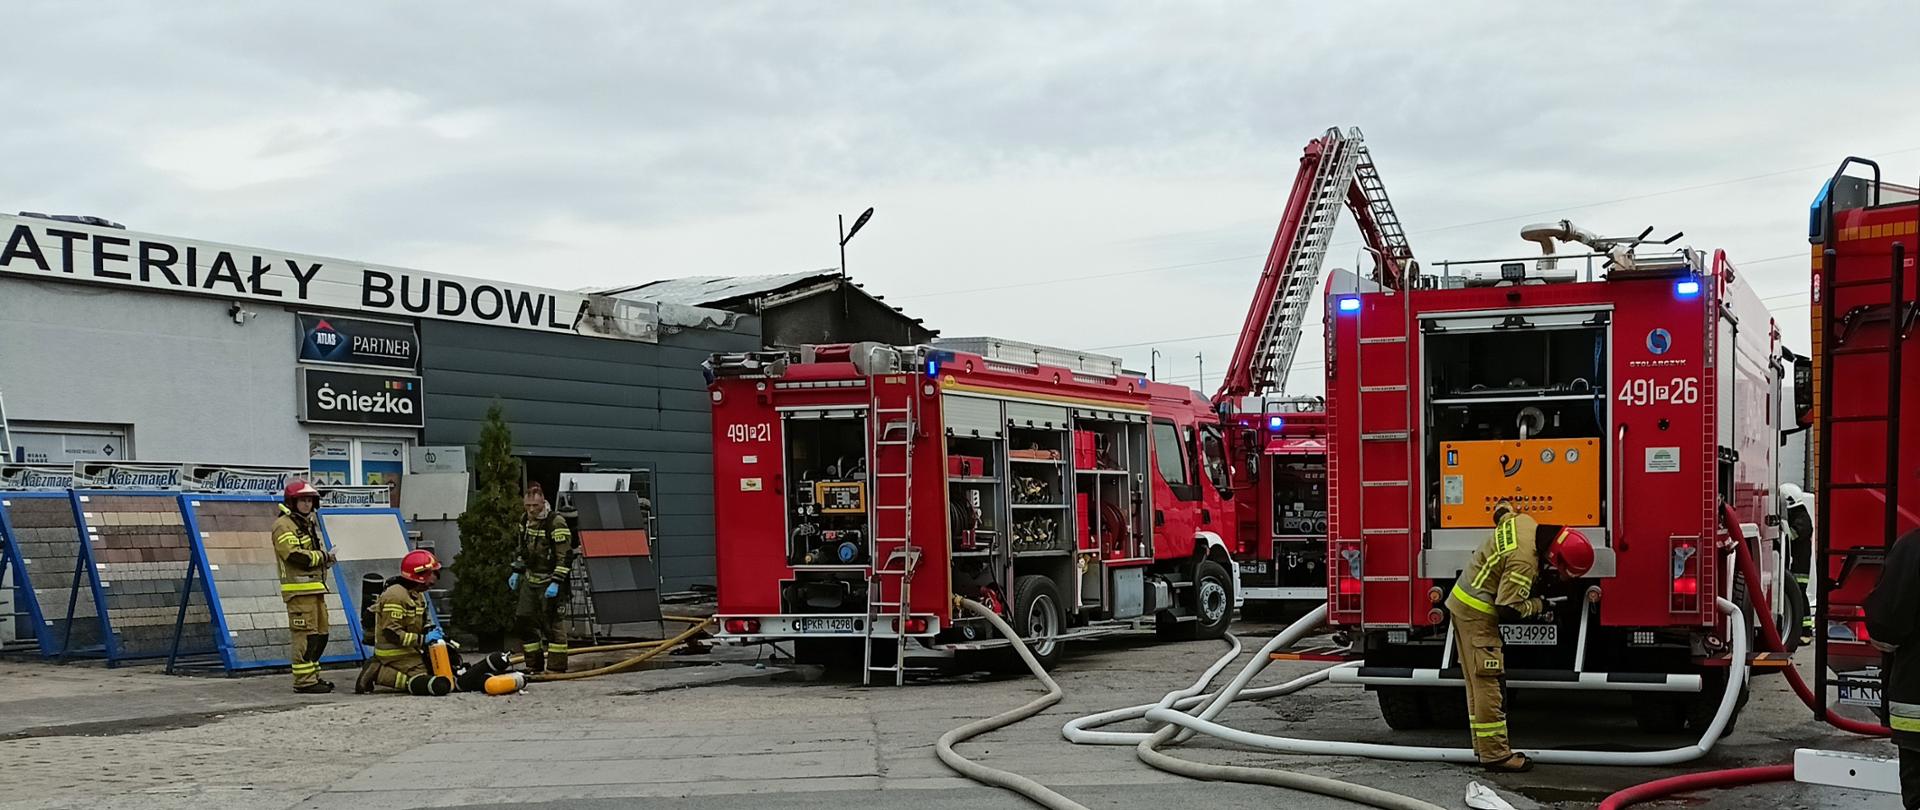 Zdjęcie przedstawia wozy strażacki biorące udział w zdarzeniu oraz strażaków odpoczywających po wyjściu ze strefy zagrożenia.